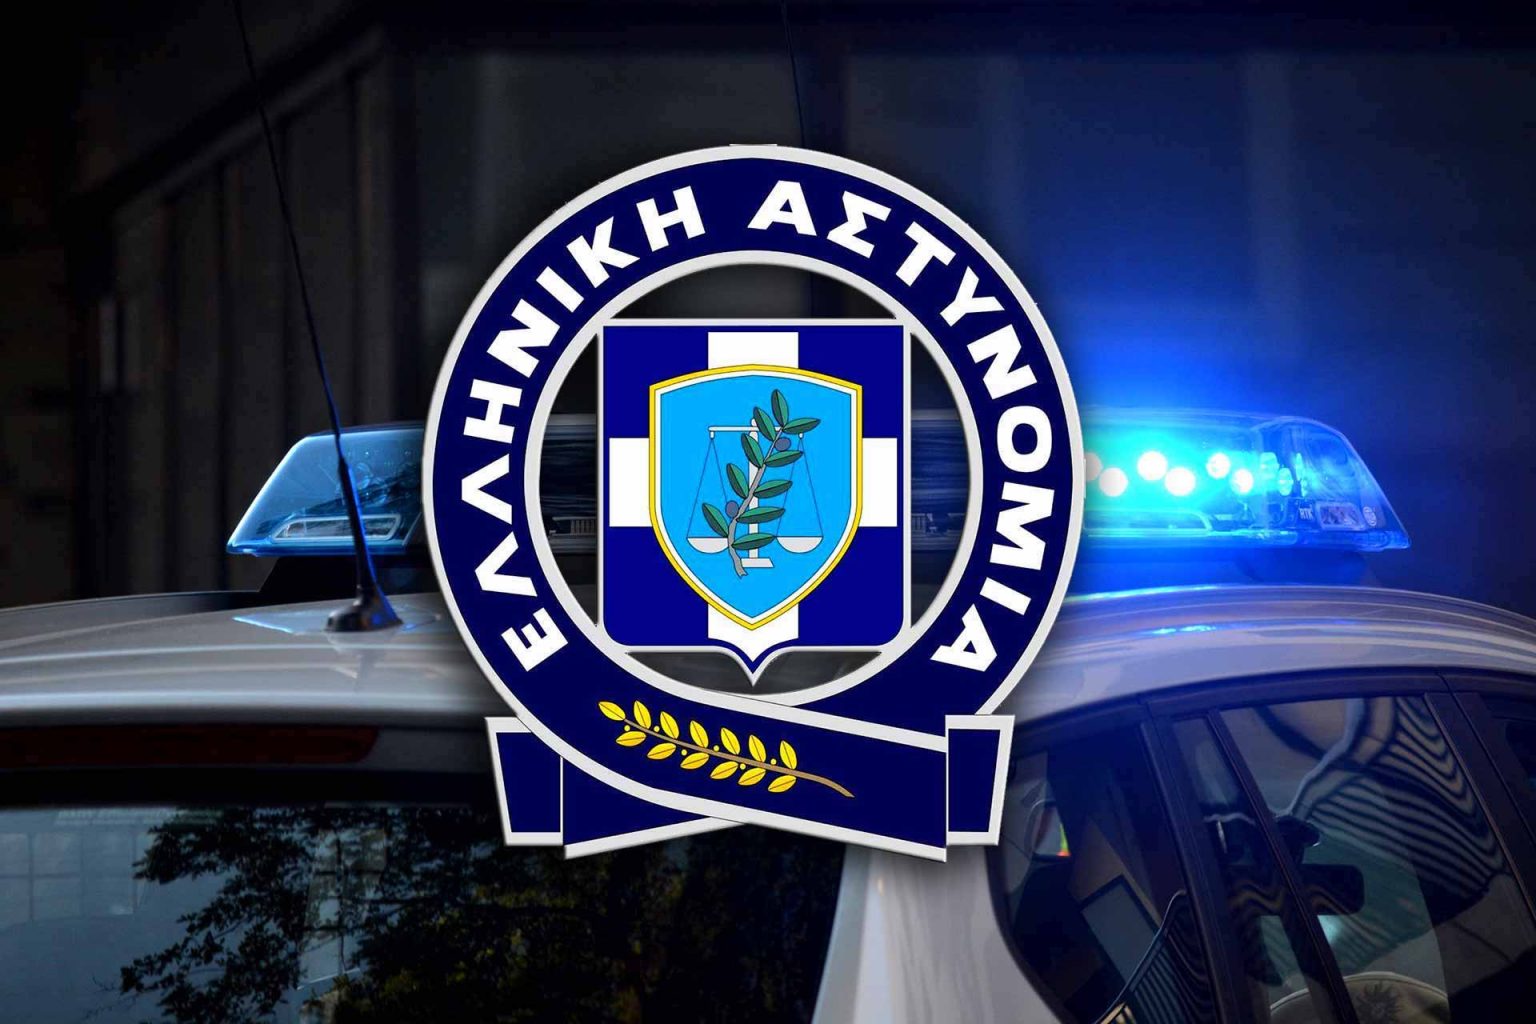 Καμία καταγγελία για ξυλοδαρμό ανήλικου στις Αχαρνές, λέει η Αστυνομία